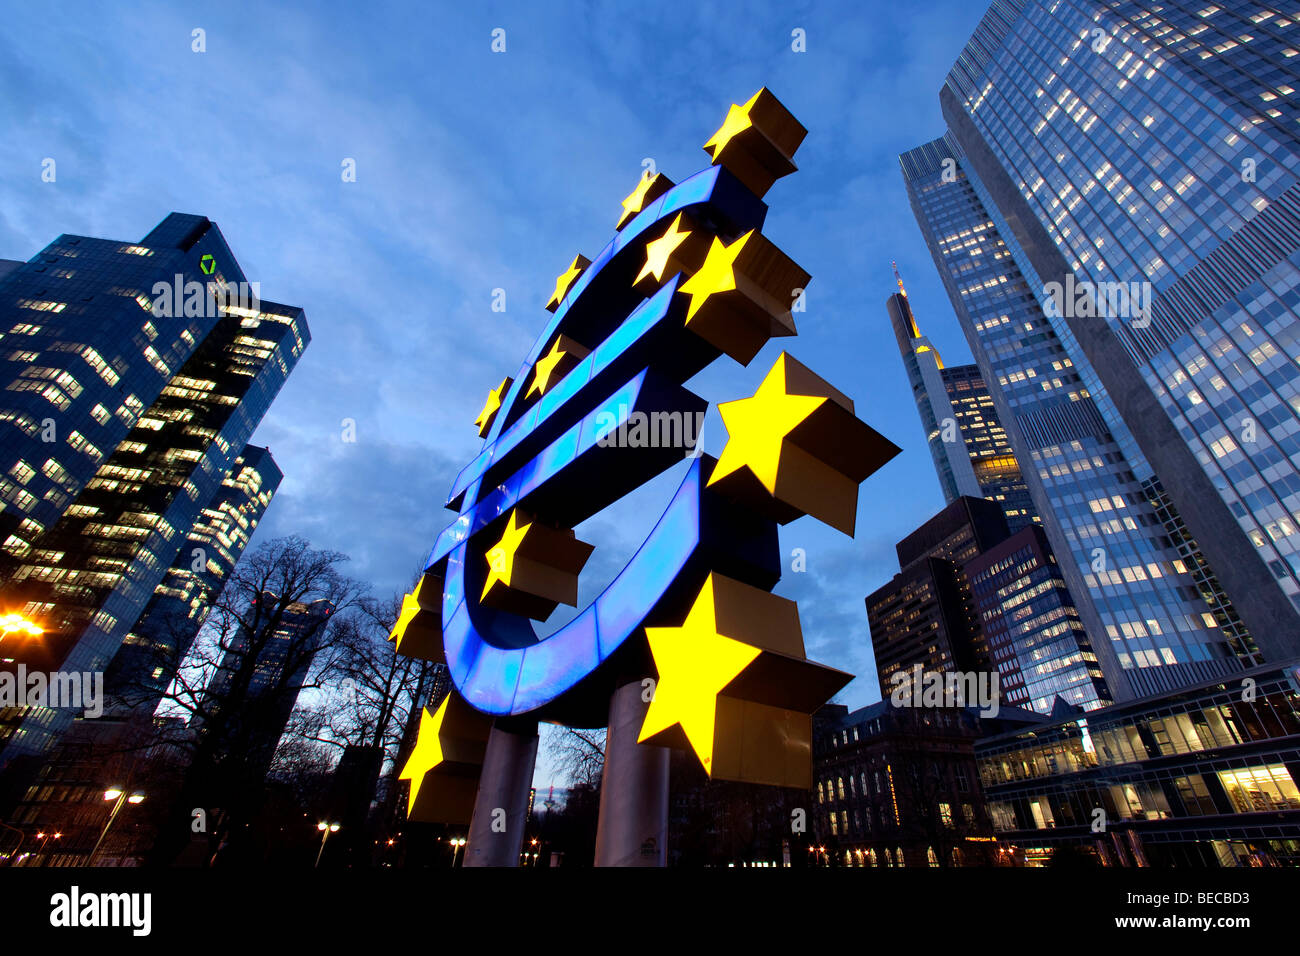 Banco Central Europeo, a la derecha, con el símbolo del euro y del Dresdner Bank, a la izquierda, en Frankfurt am Main, Hesse, Alemania, Europa Foto de stock